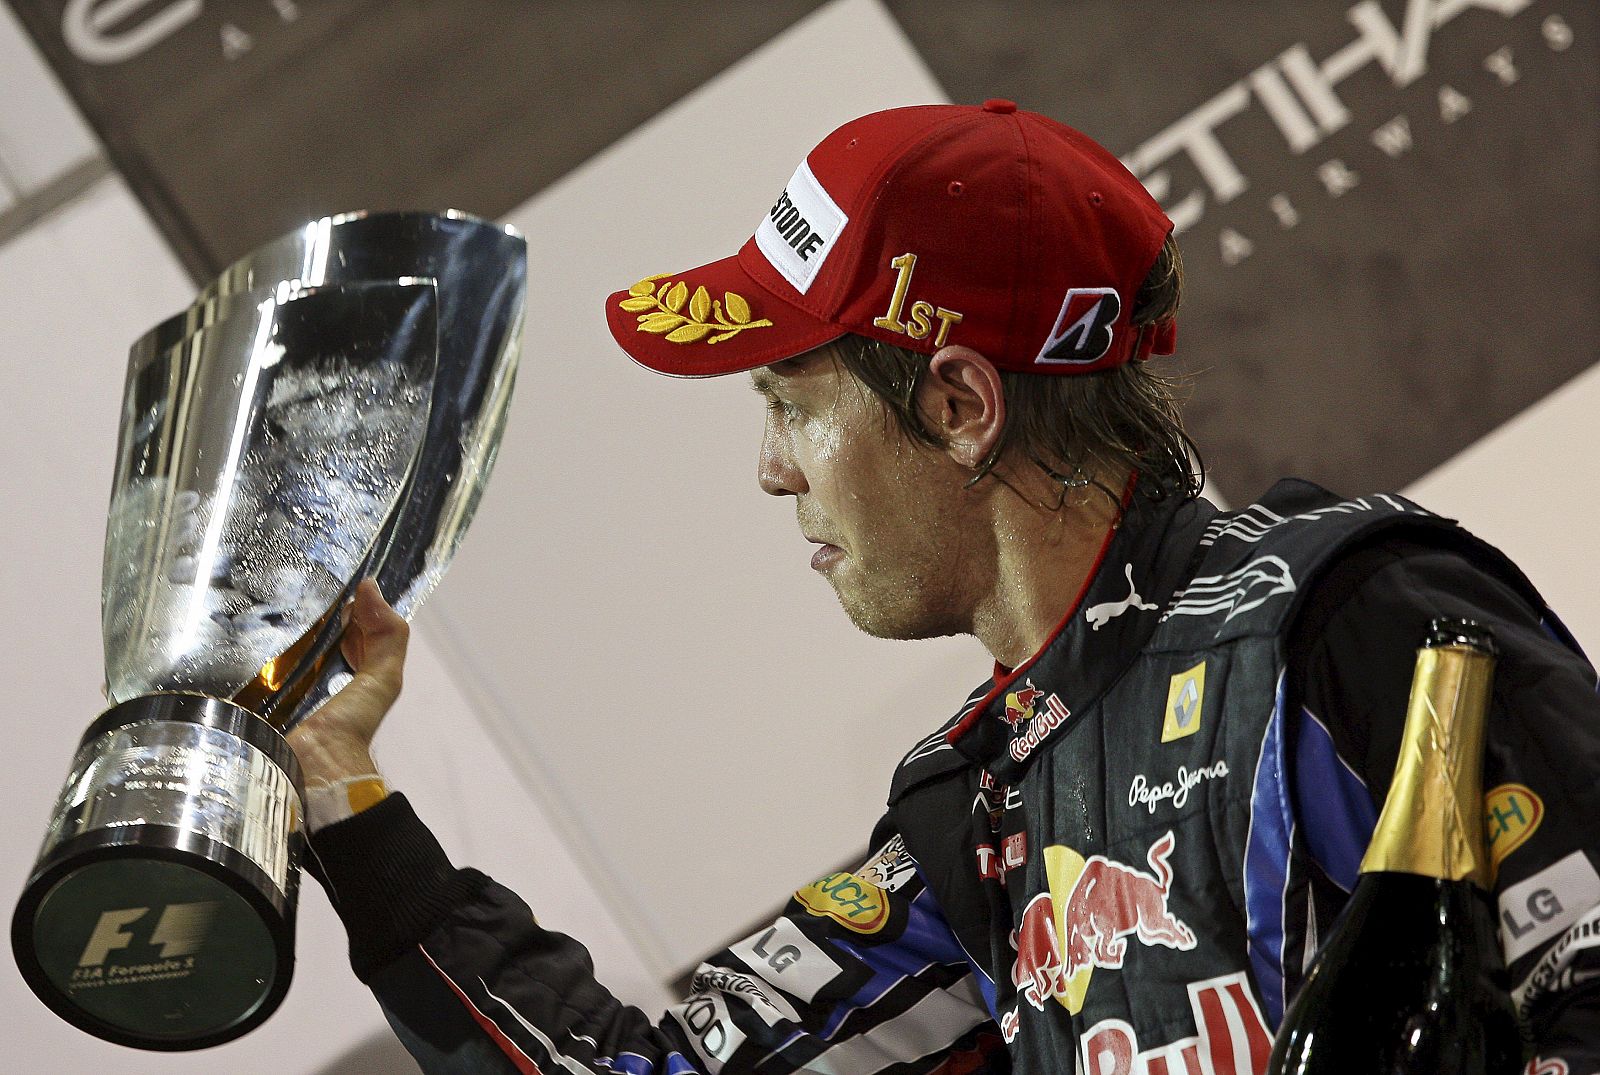 El piloto alemán de la escudería Red Bull de Fórmula Uno, Sebastian Vettel, celebra en el podio la victoria conseguida en el Gran Premio de Abu Dabi, que le vale el campeonato del mundo de 2010.